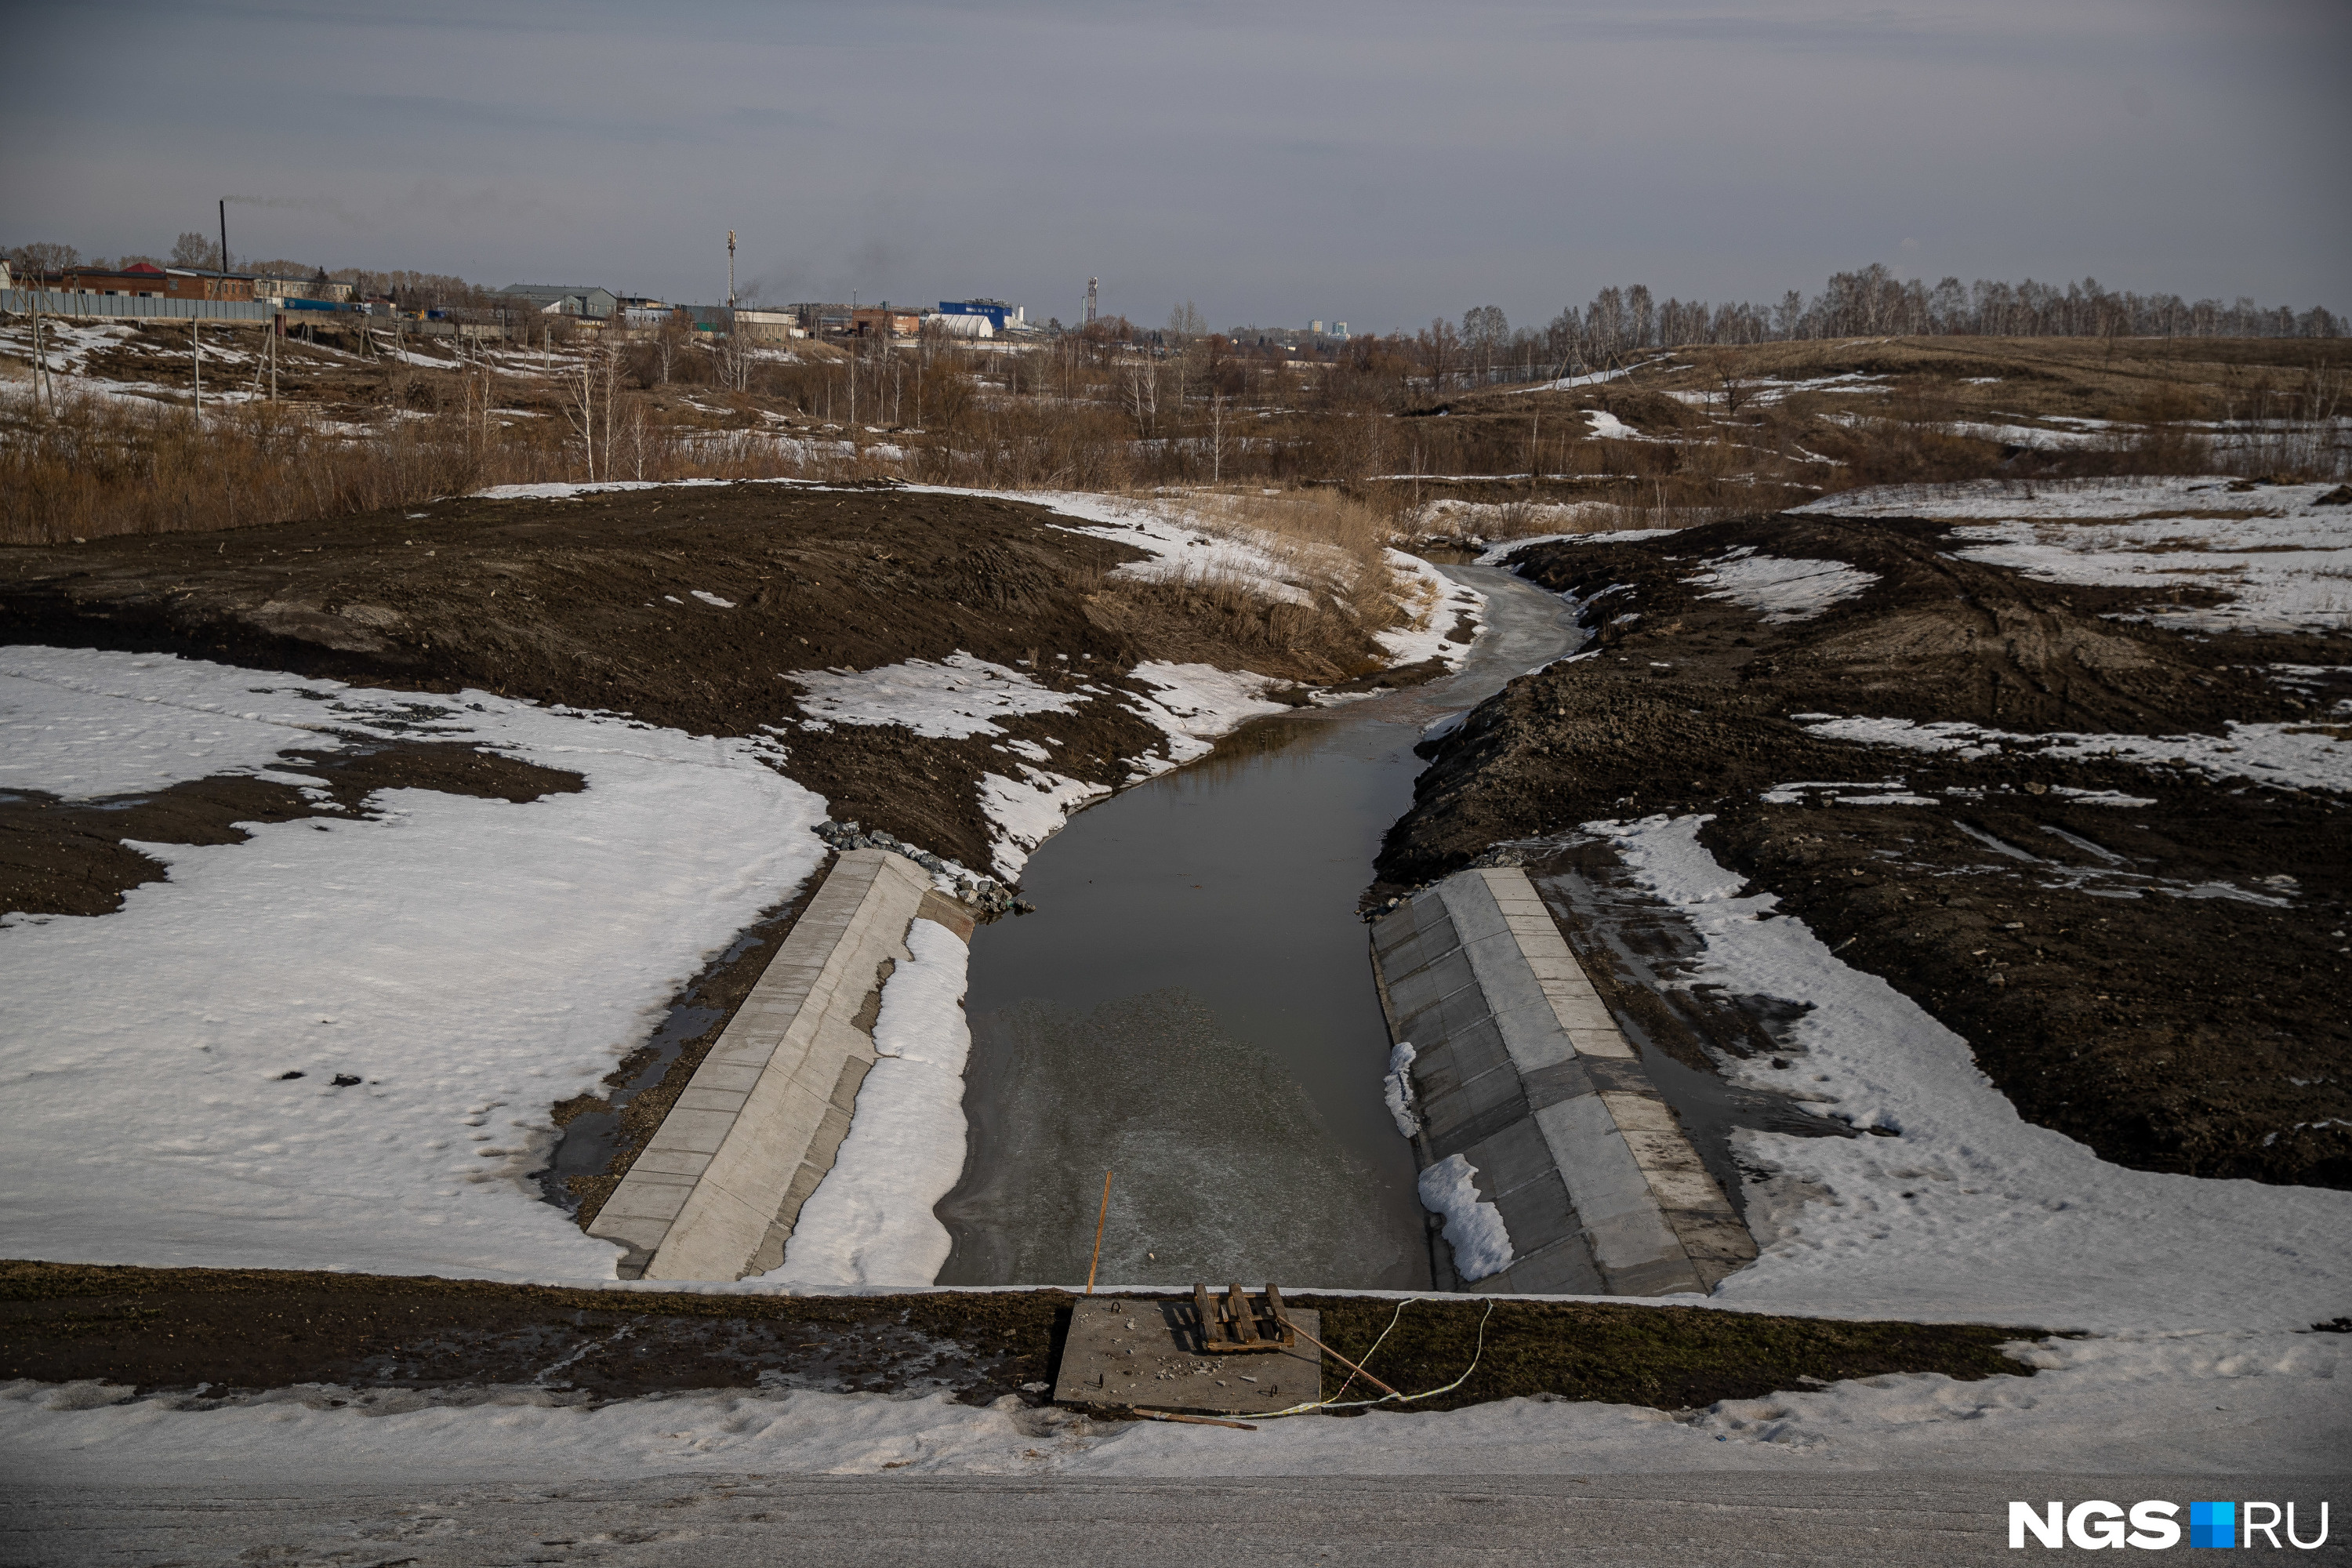 Несмотря на то что река Тула кажется маленькой, весной уровень воды поднимается, а течение несет ветки, мусор, льдины. Всё это увеличивает нагрузку на сооружение